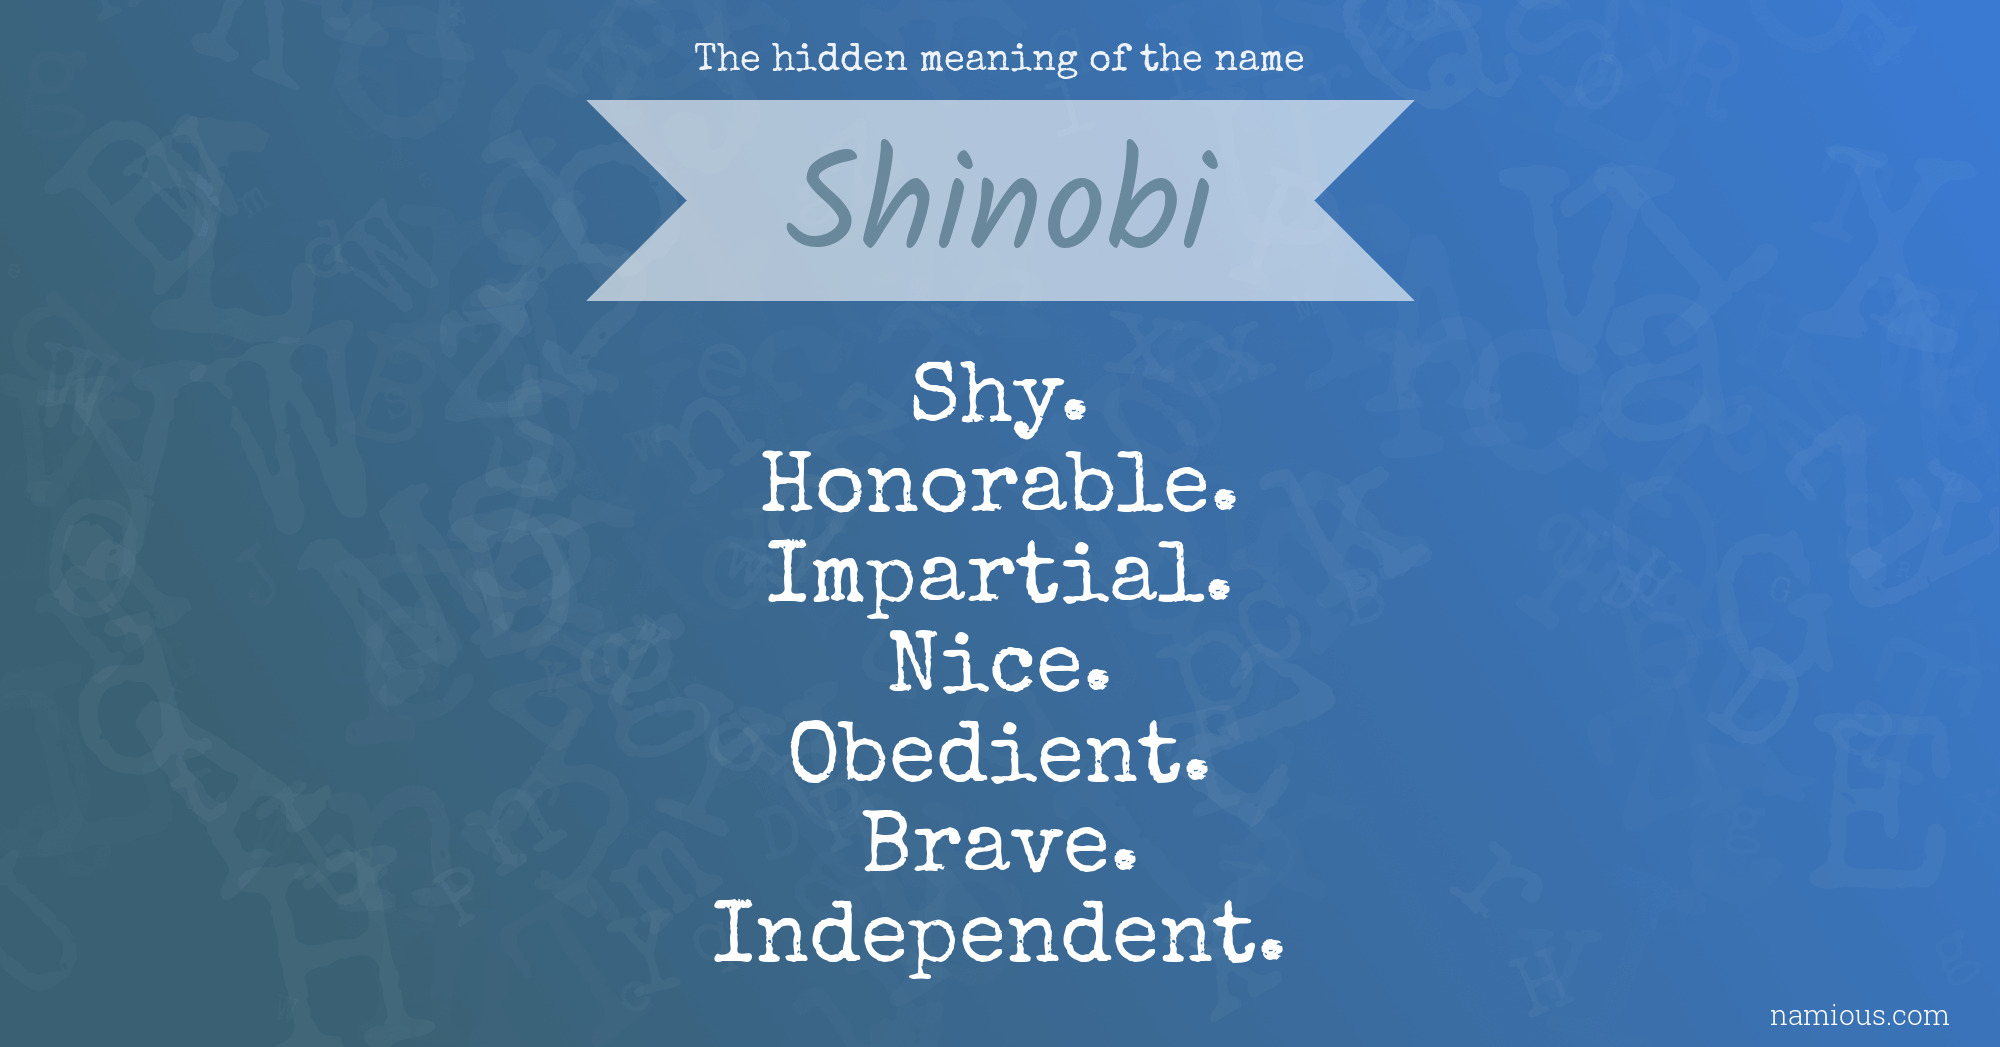 shinobi meaning